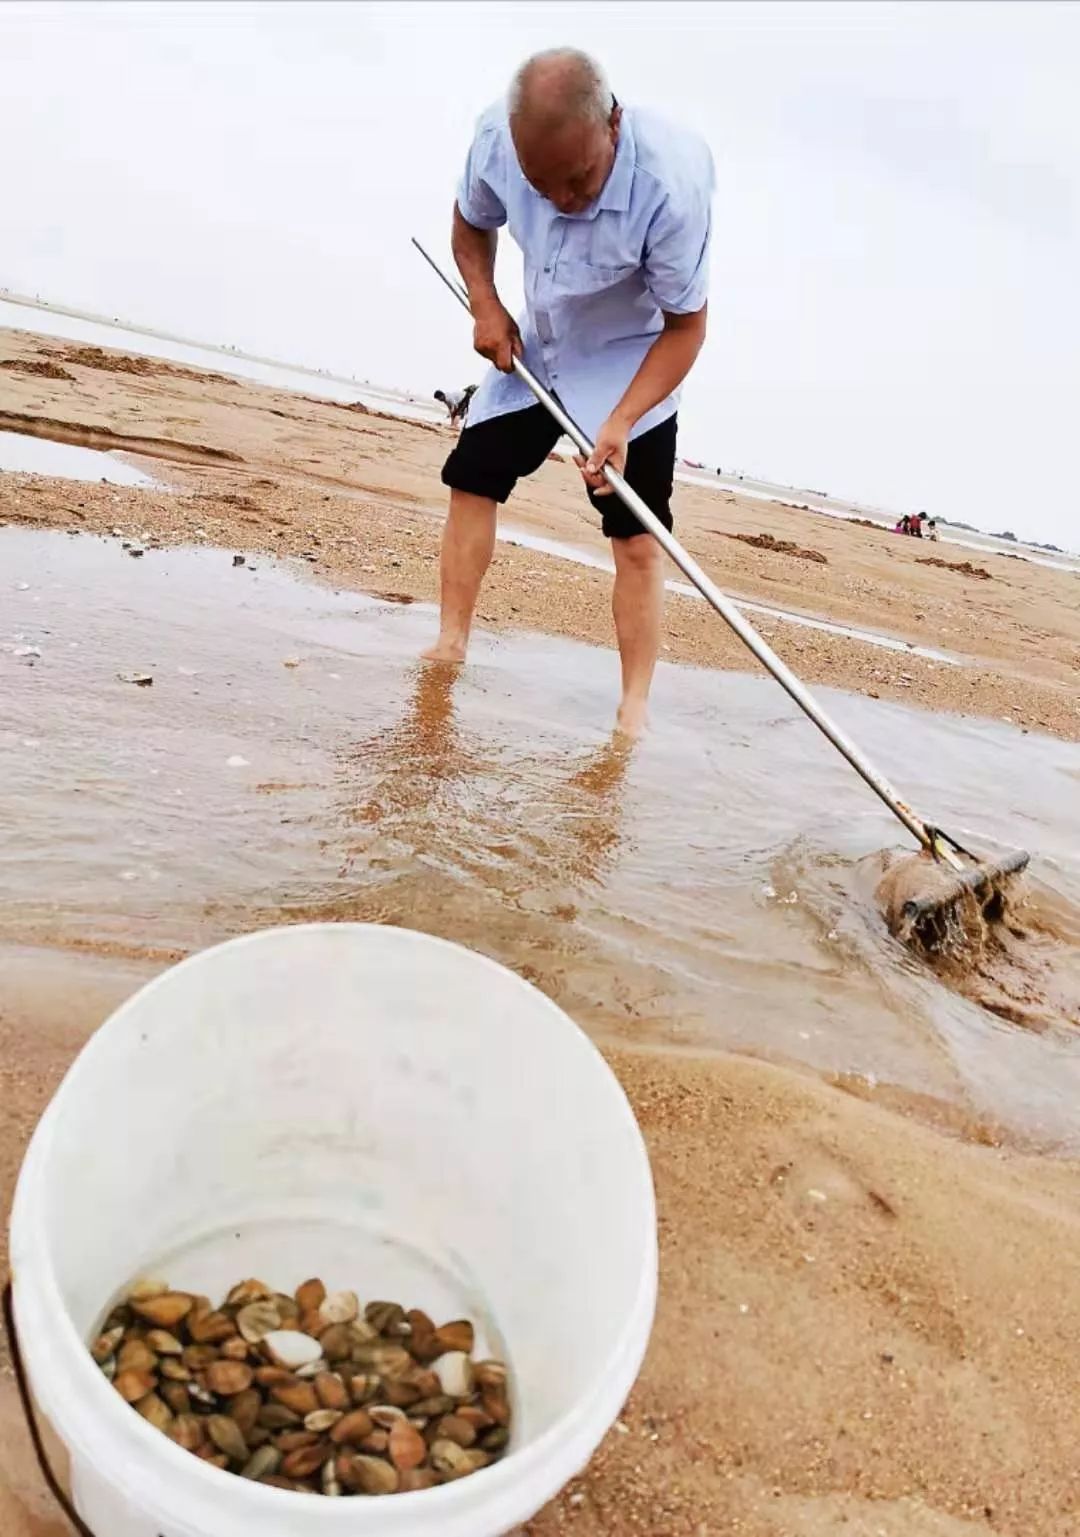 青岛人挖蛤蜊还可以这样操作耙子盛馒头的漏盘都用上了